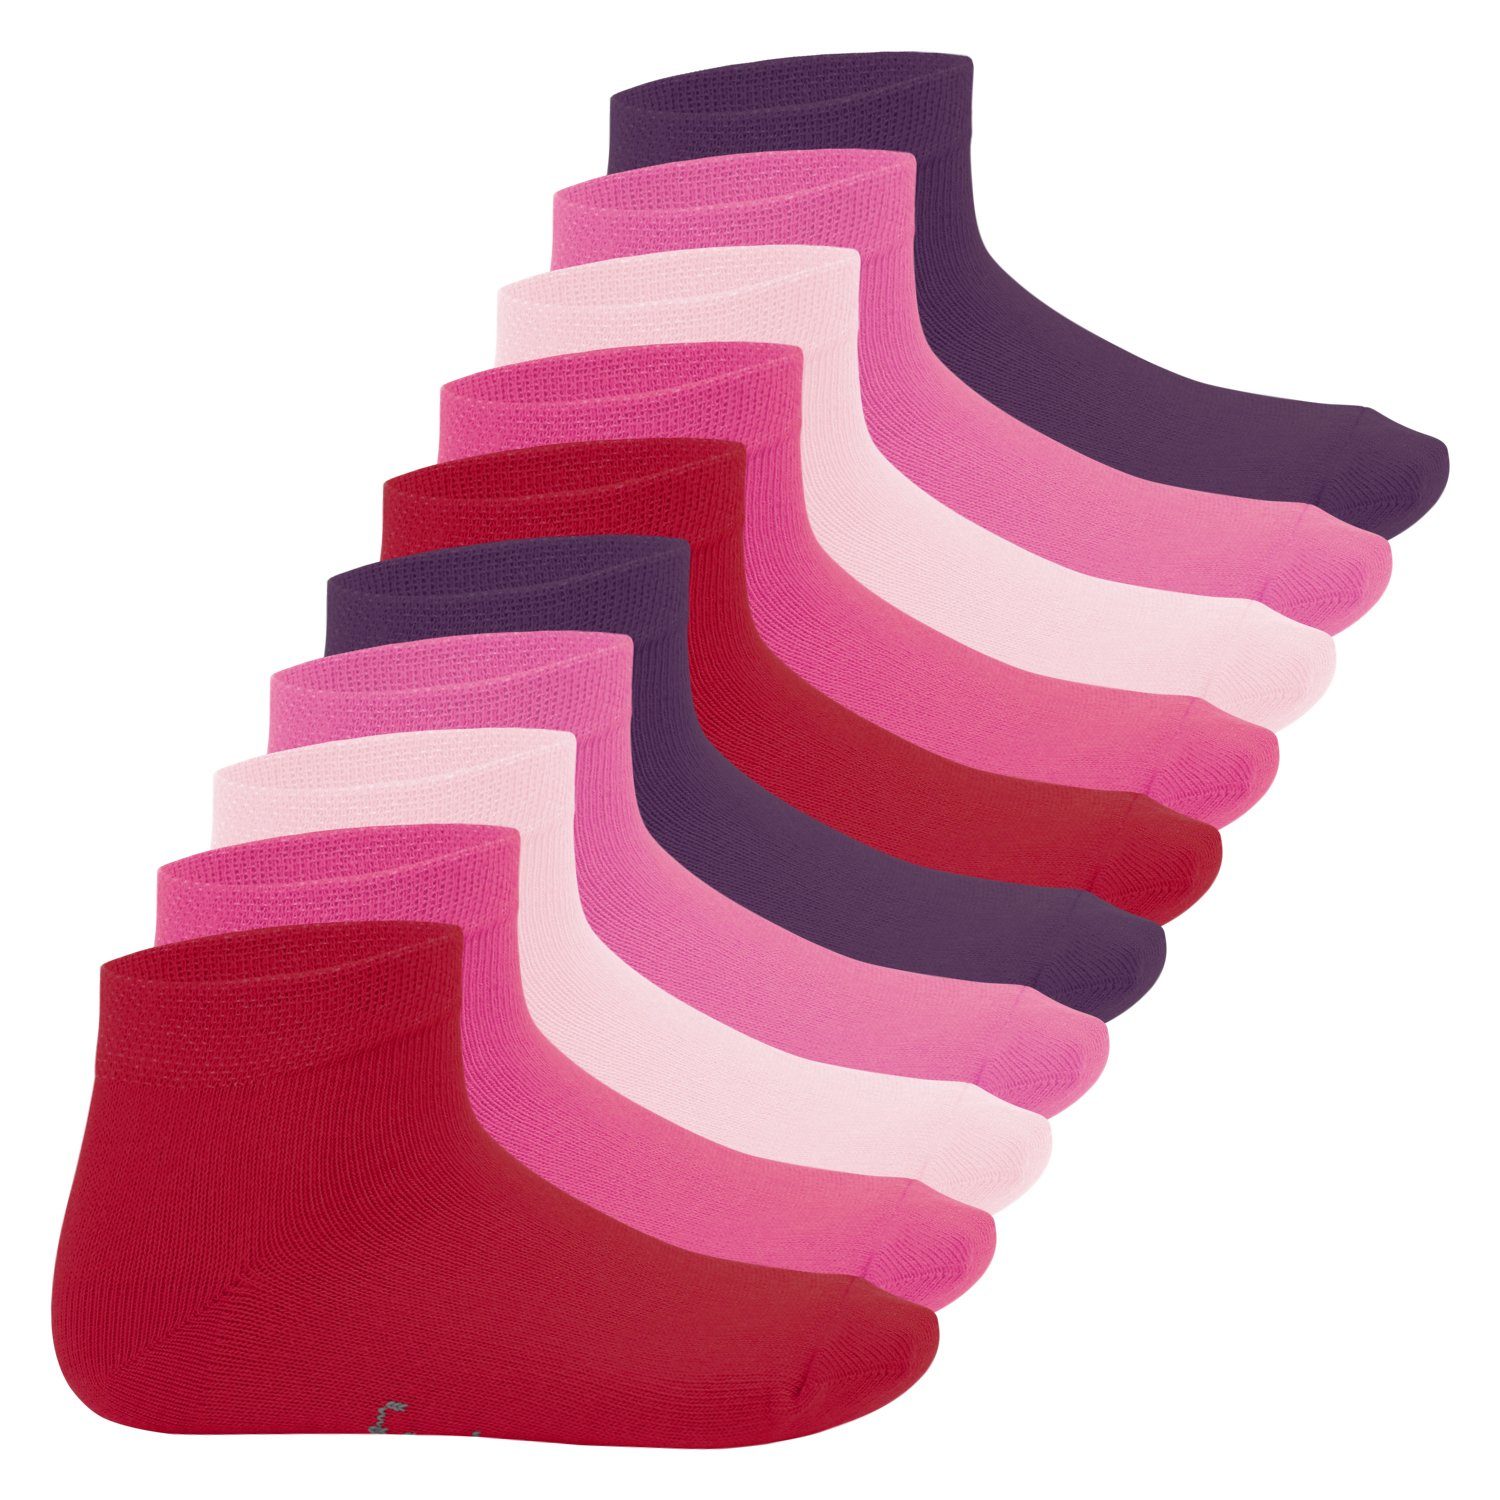 Kurzschaft it! Footstar Jungen Berryfarben Paar) Socken (10 Kinder & Kurzsocken Mädchen Sneak